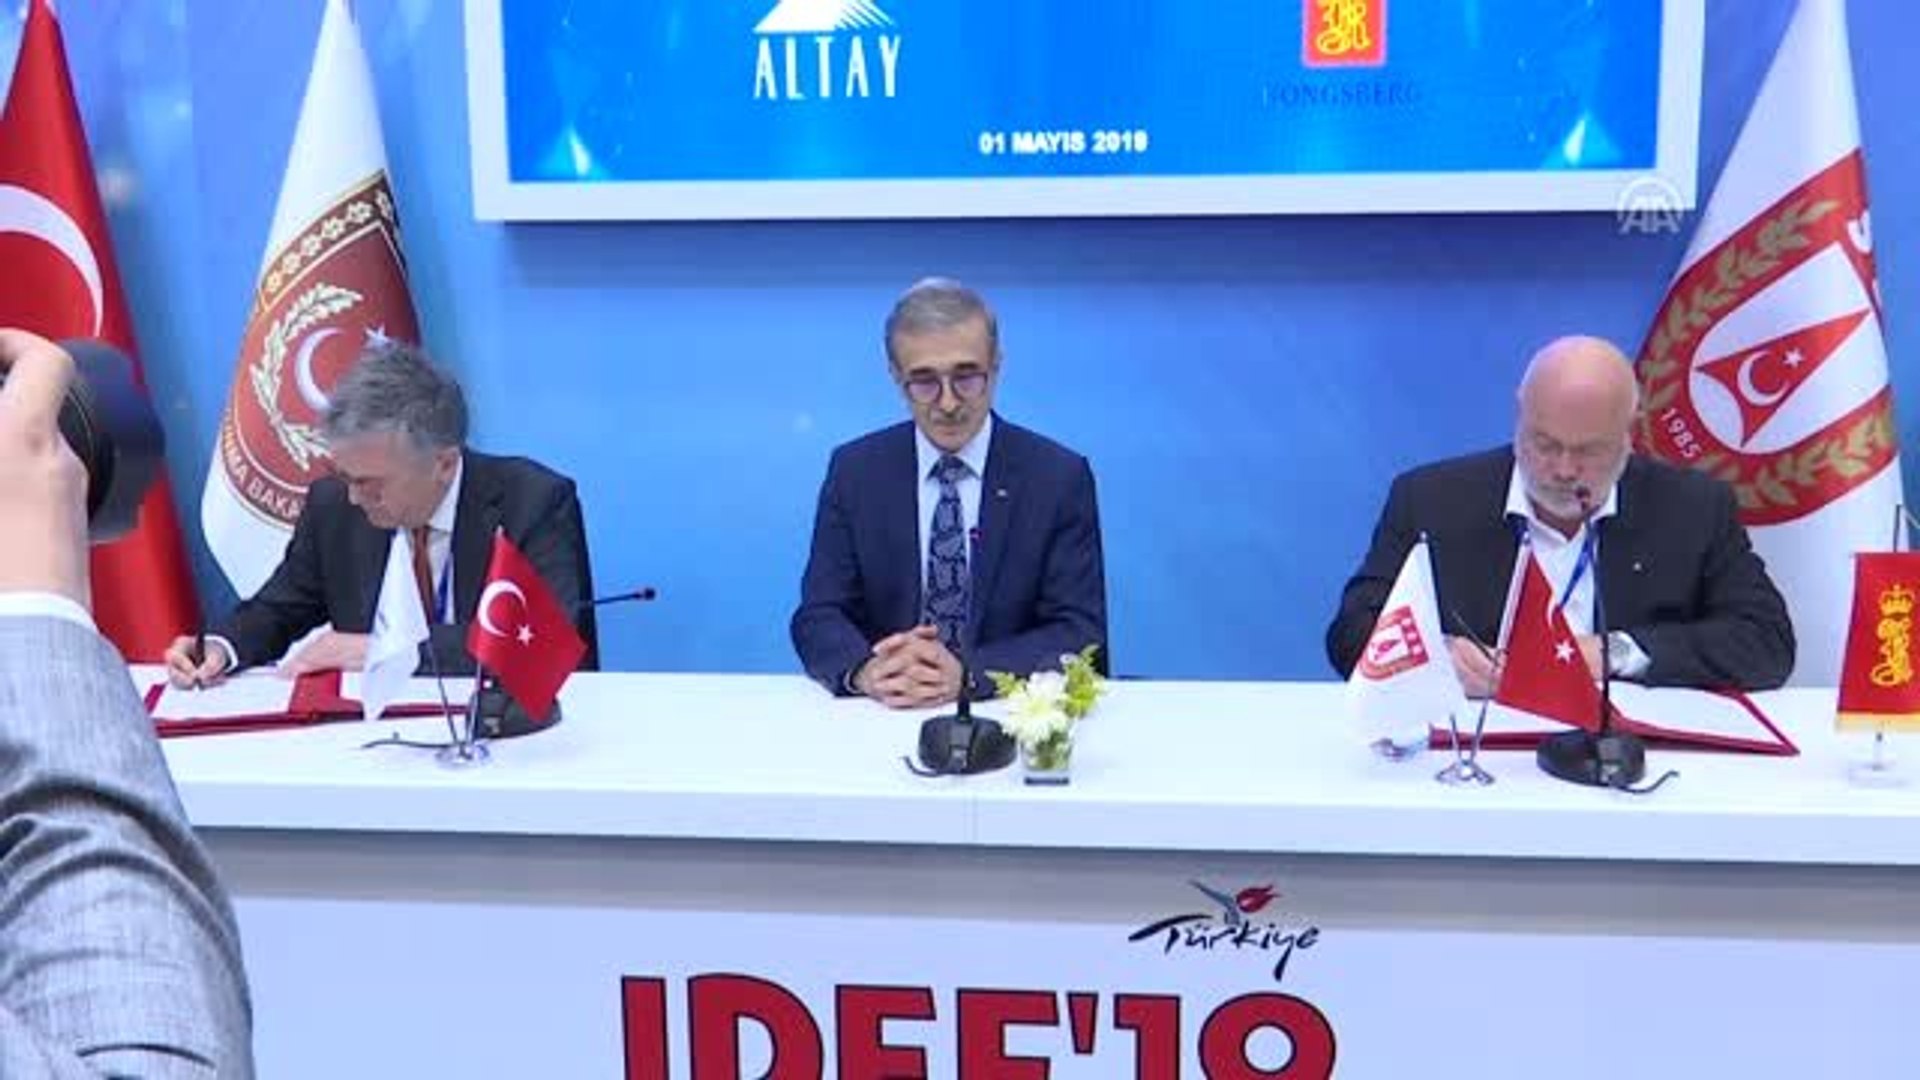 Idef'19 İş Birliği Anlaşmaları - Altay Yazılım ile Norveçli Kongsberg İmza  Töreni - Dailymotion Video